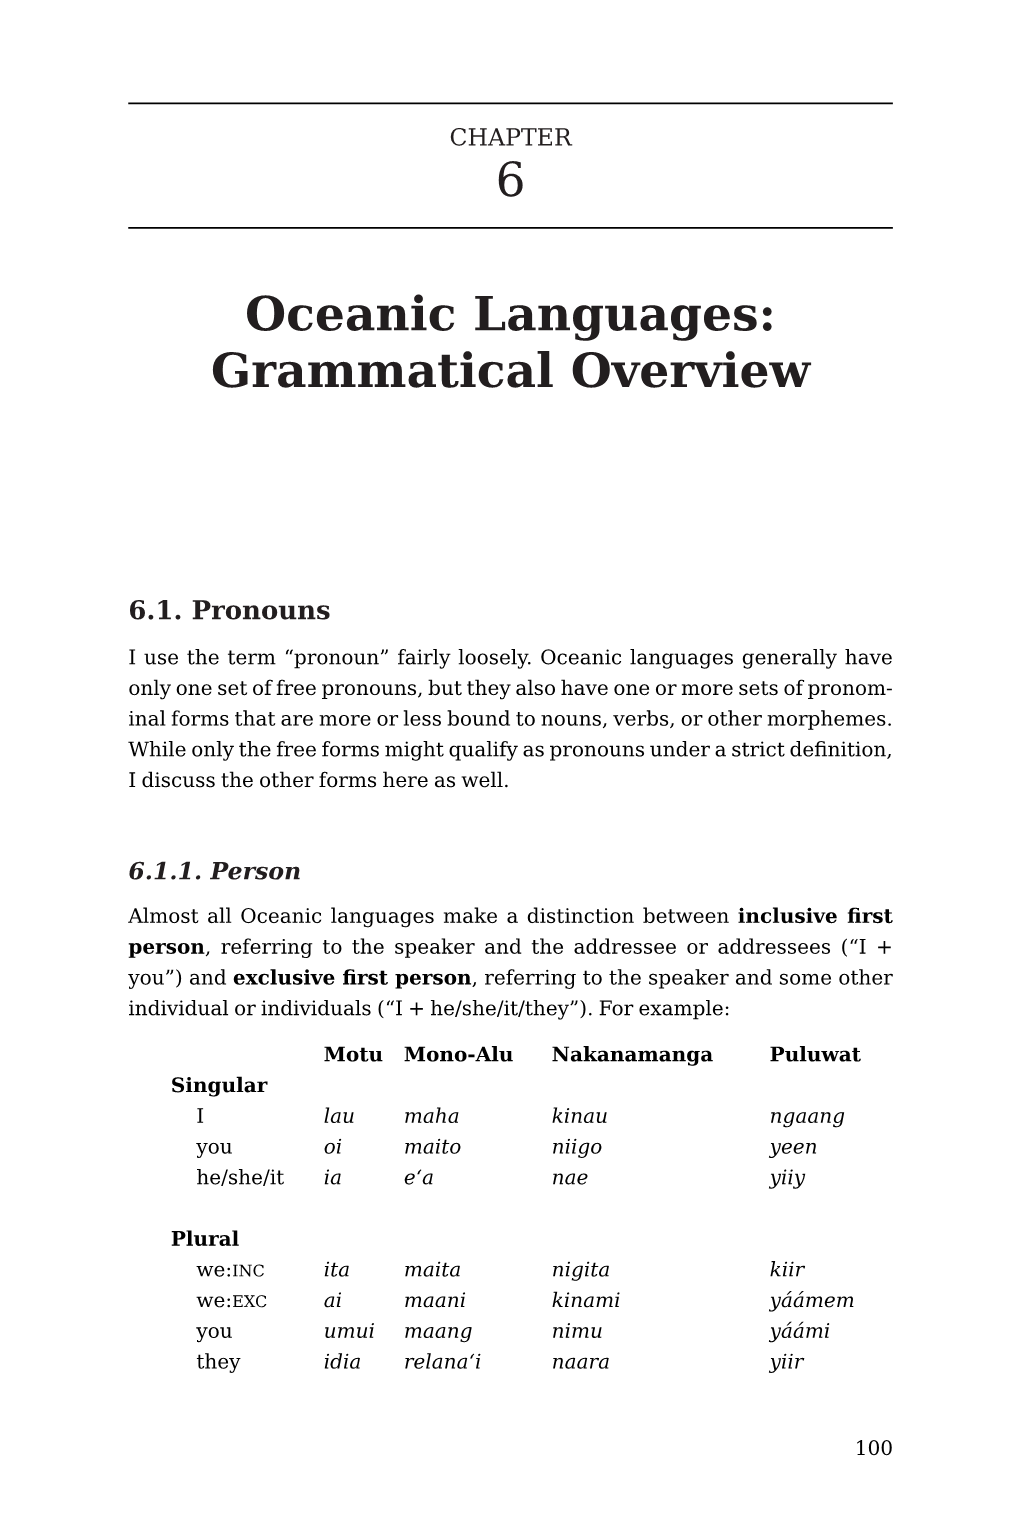 6 Oceanic Languages